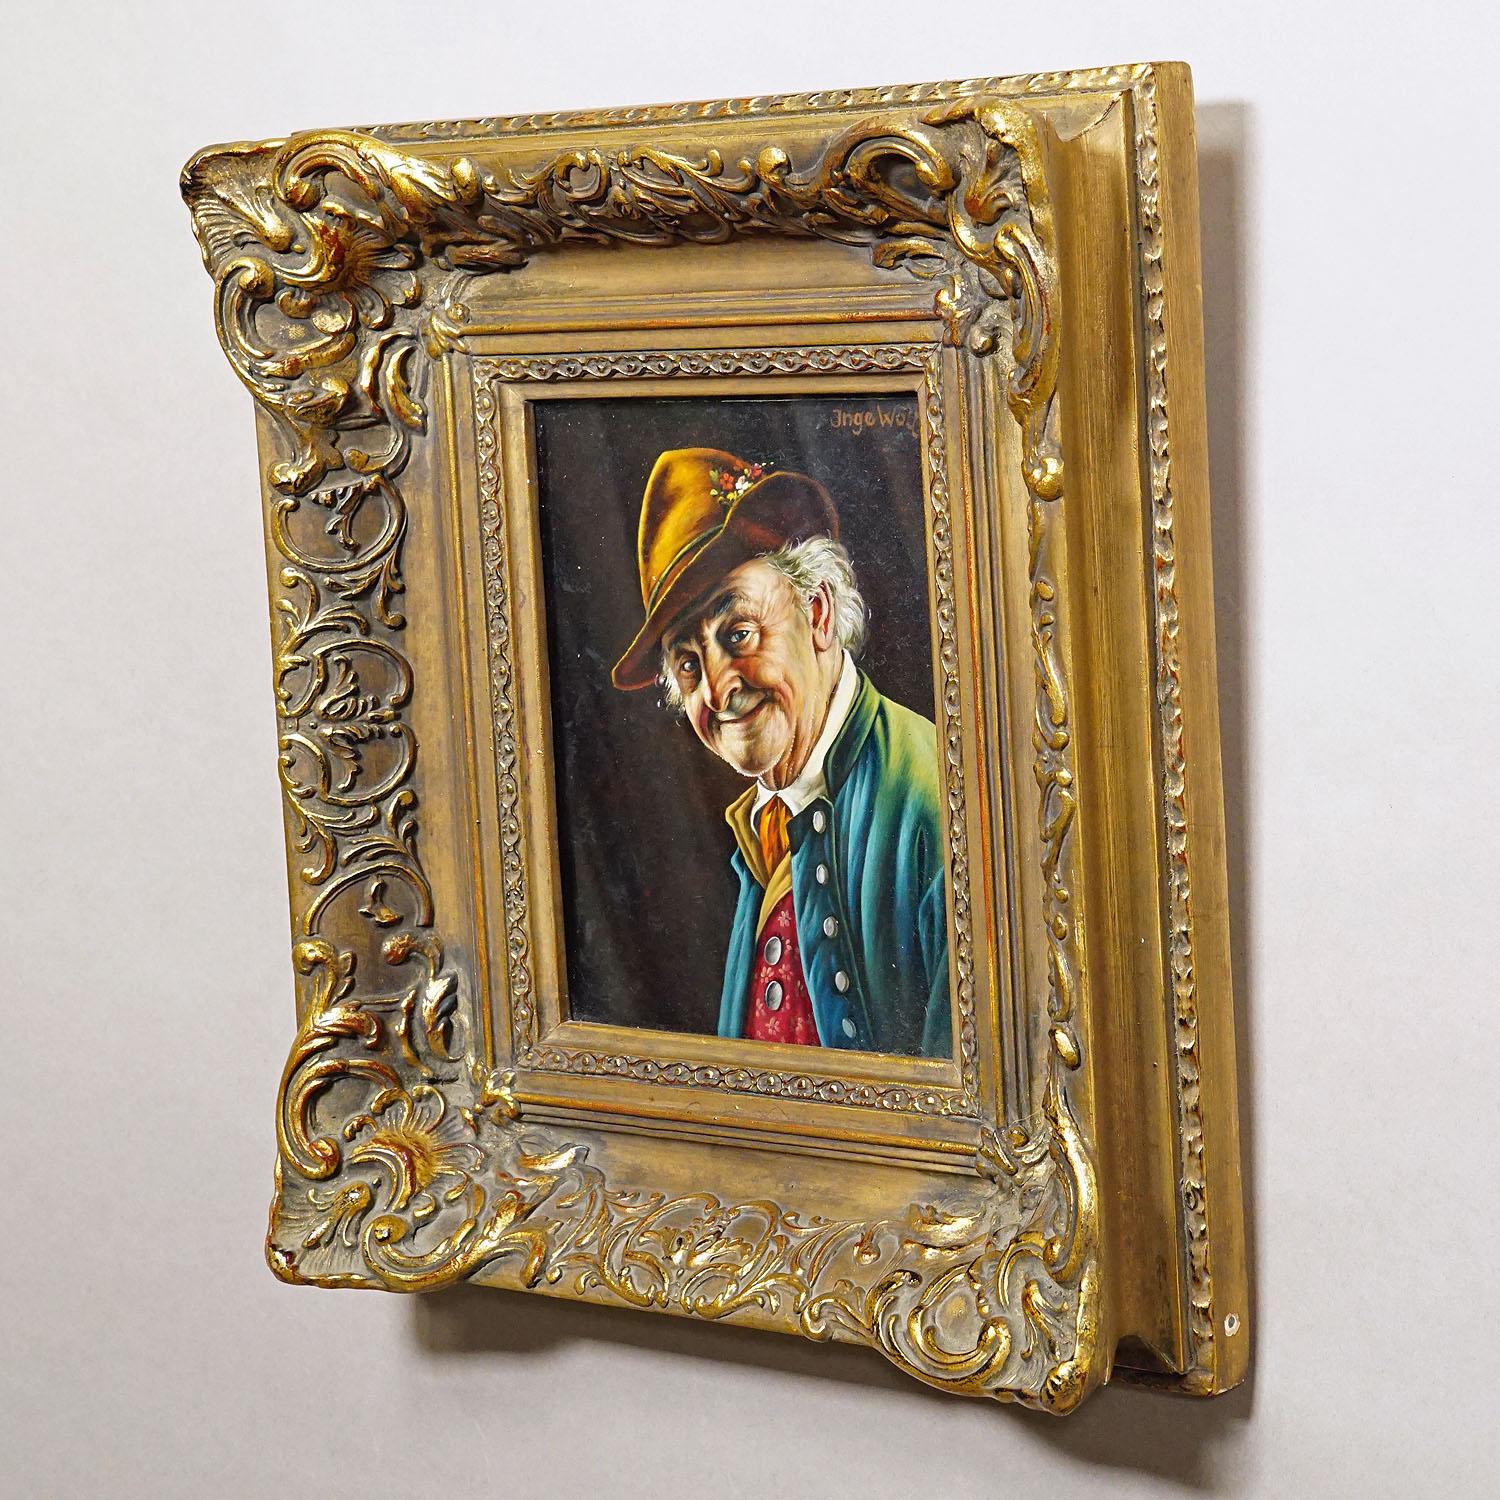 Folk Art Inge Woelfle - Portrait of a Bavarian Folksy Man, Oil on Wood For Sale